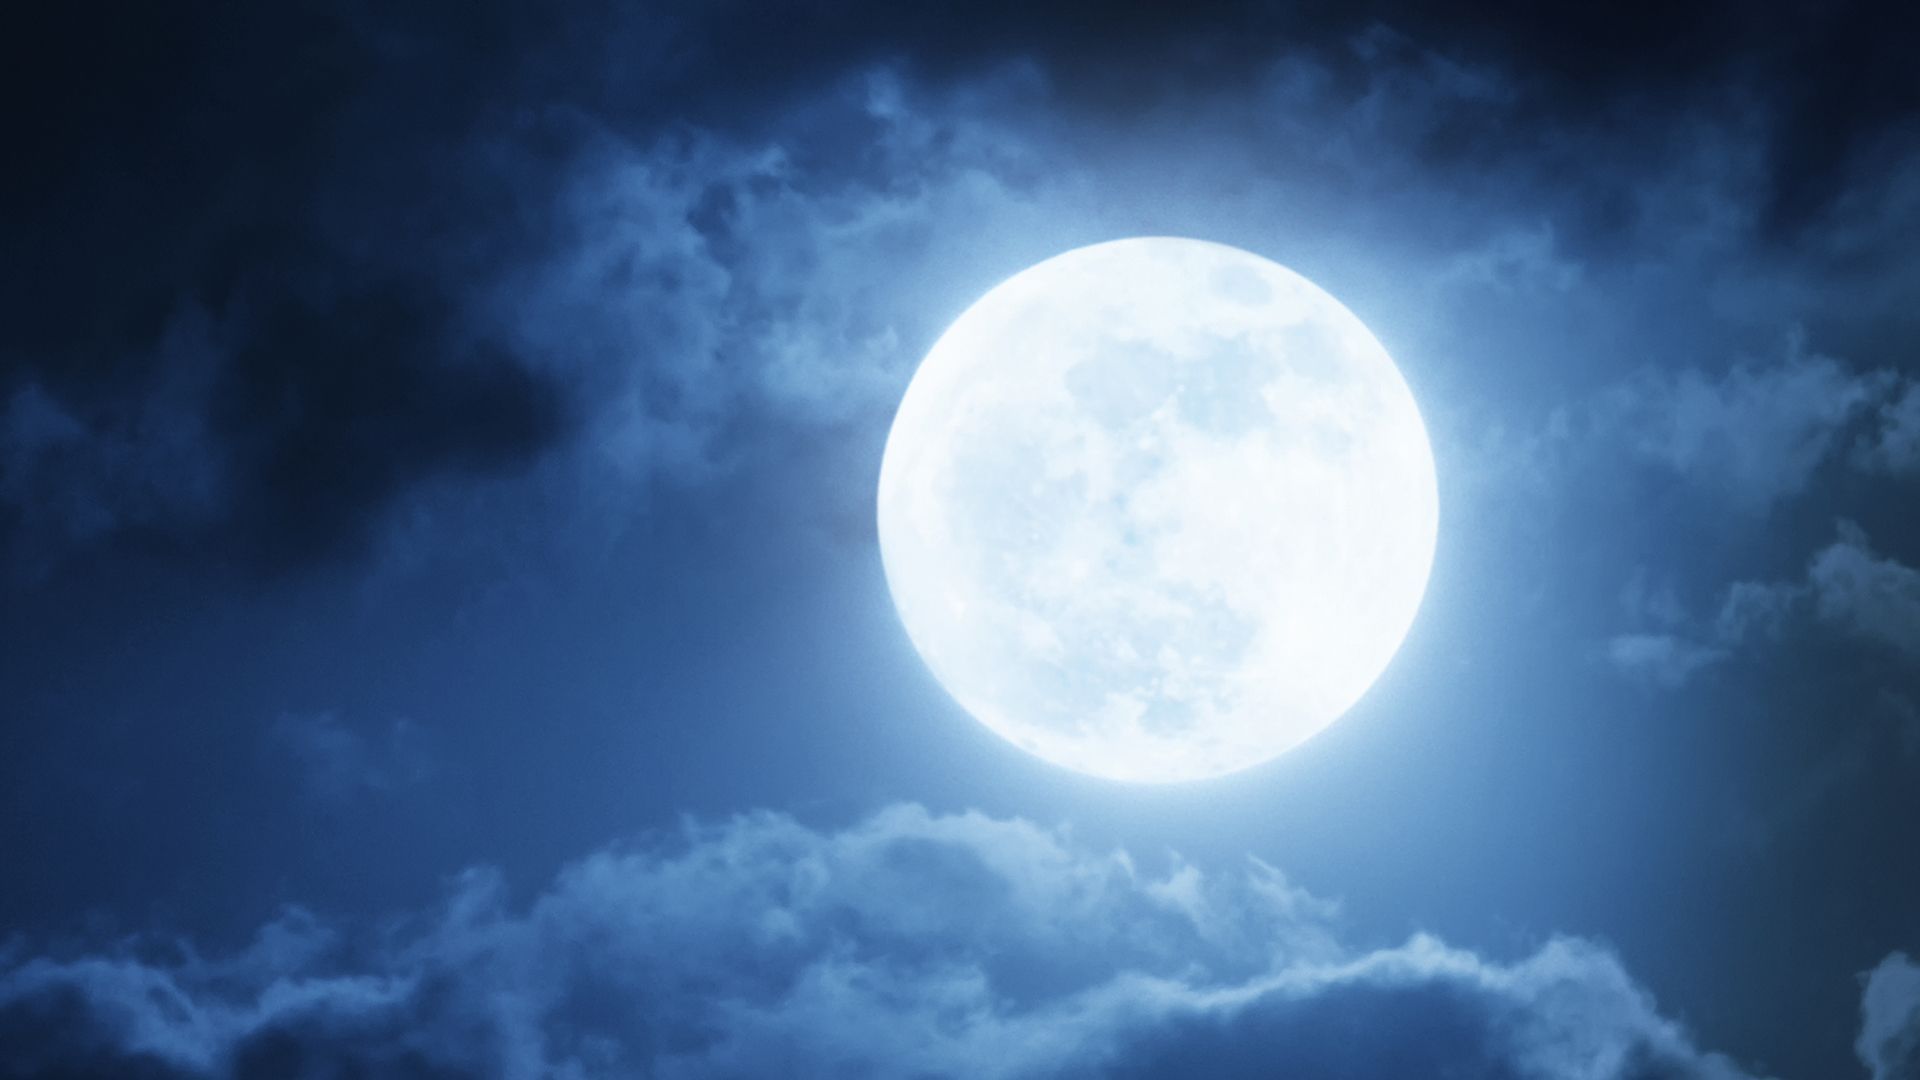 vroegrijp Bedenk Symposium Slecht slapen tijdens volle maan: mythe of waarheid?